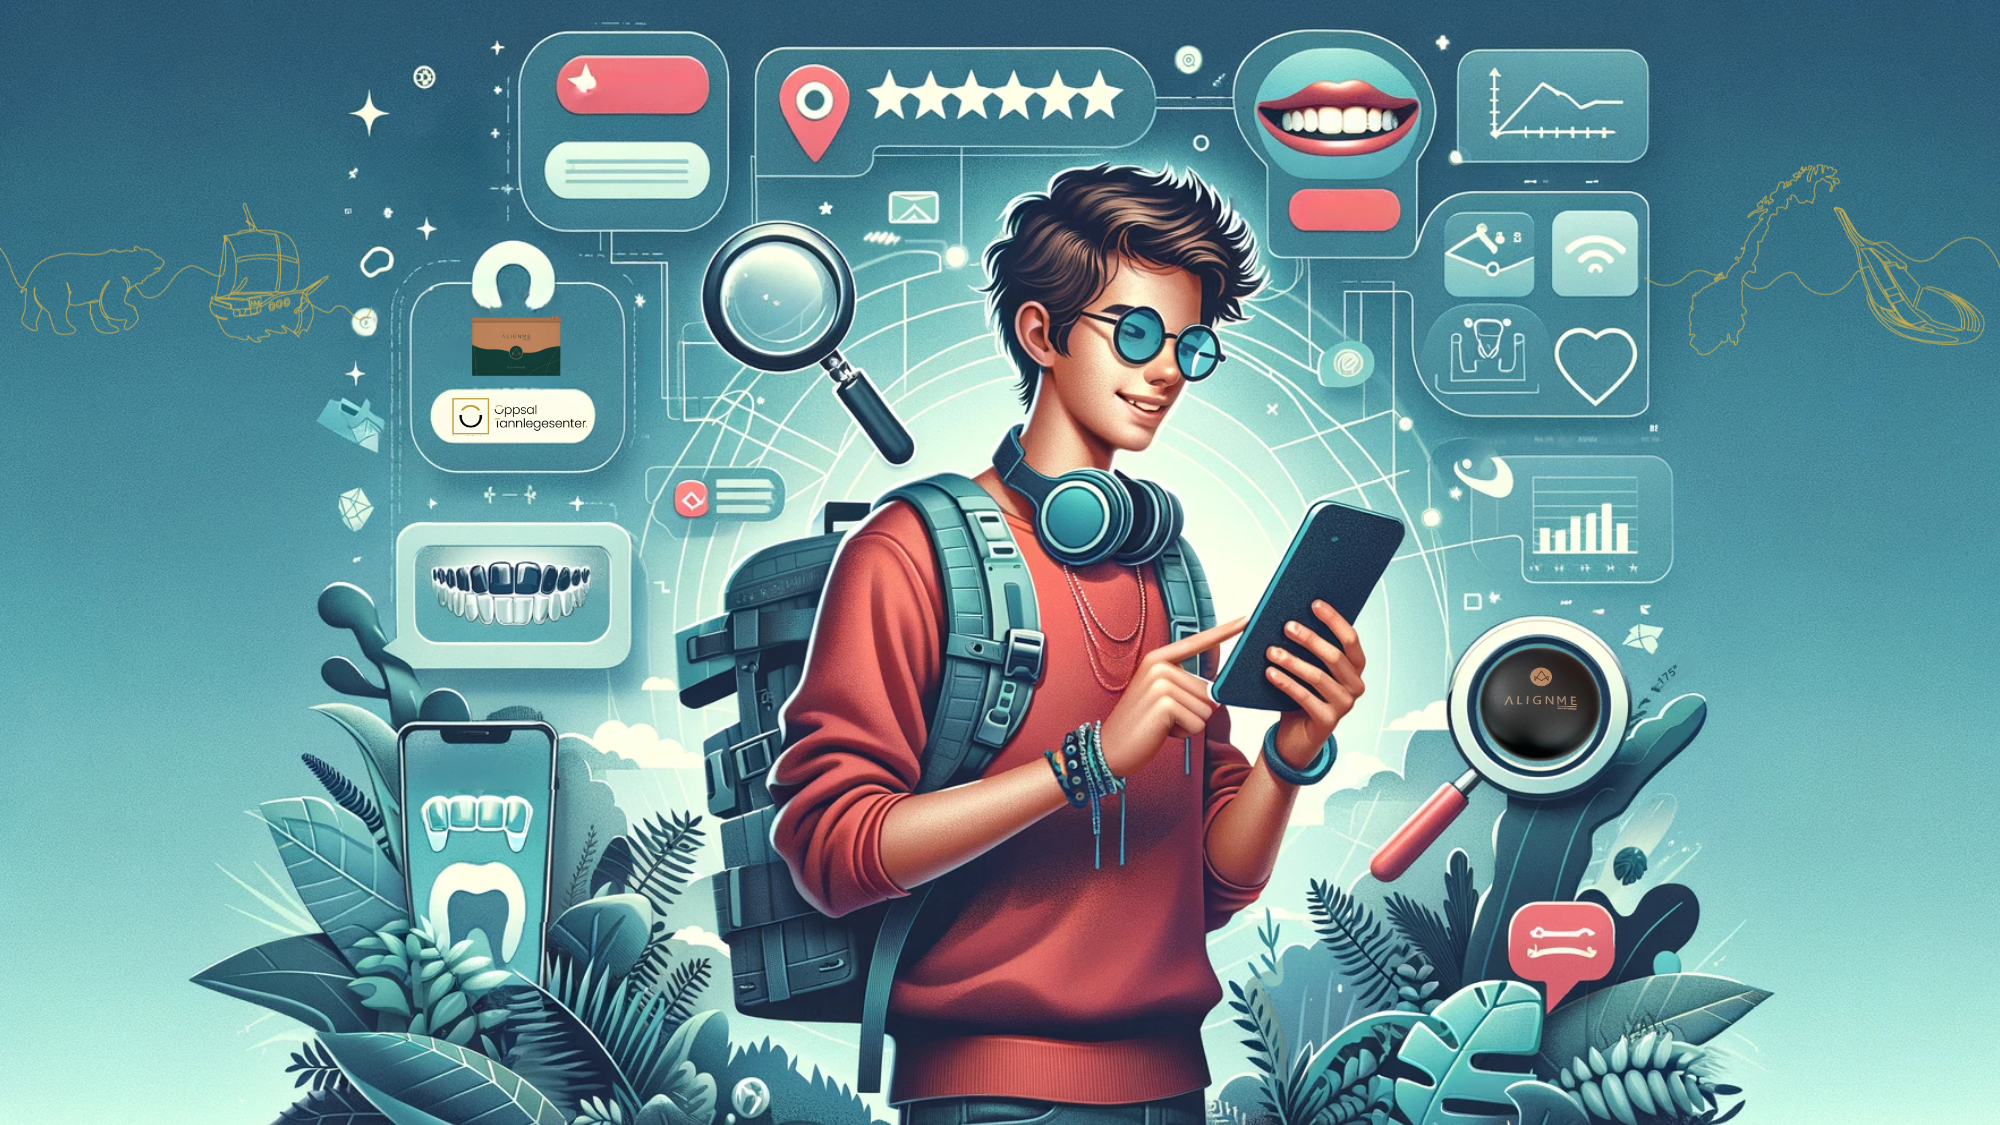 Ung eventyrer utforsker tannregulering digitalt, omgitt av app-ikoner og positive symboler.